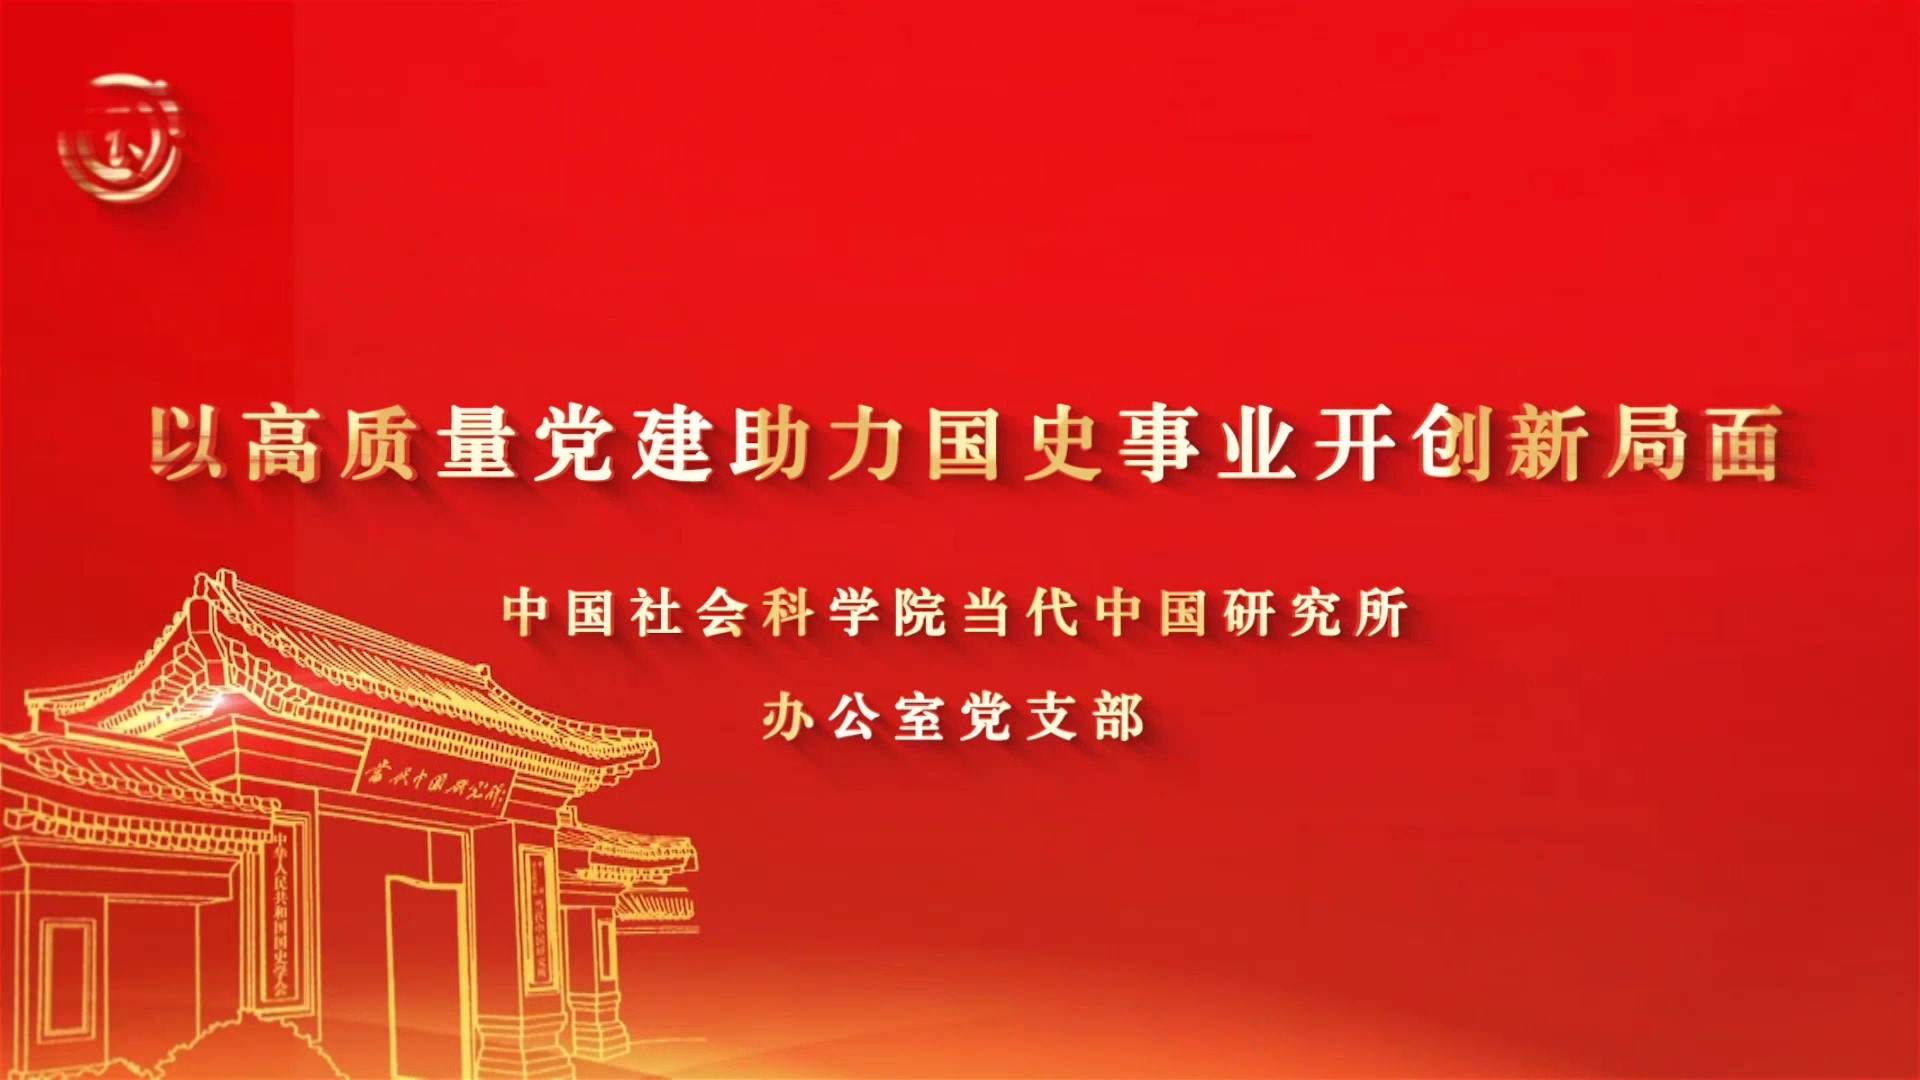 中国社会科学院当代中国研究所《以高质量党建助力国史事业开创新局面》